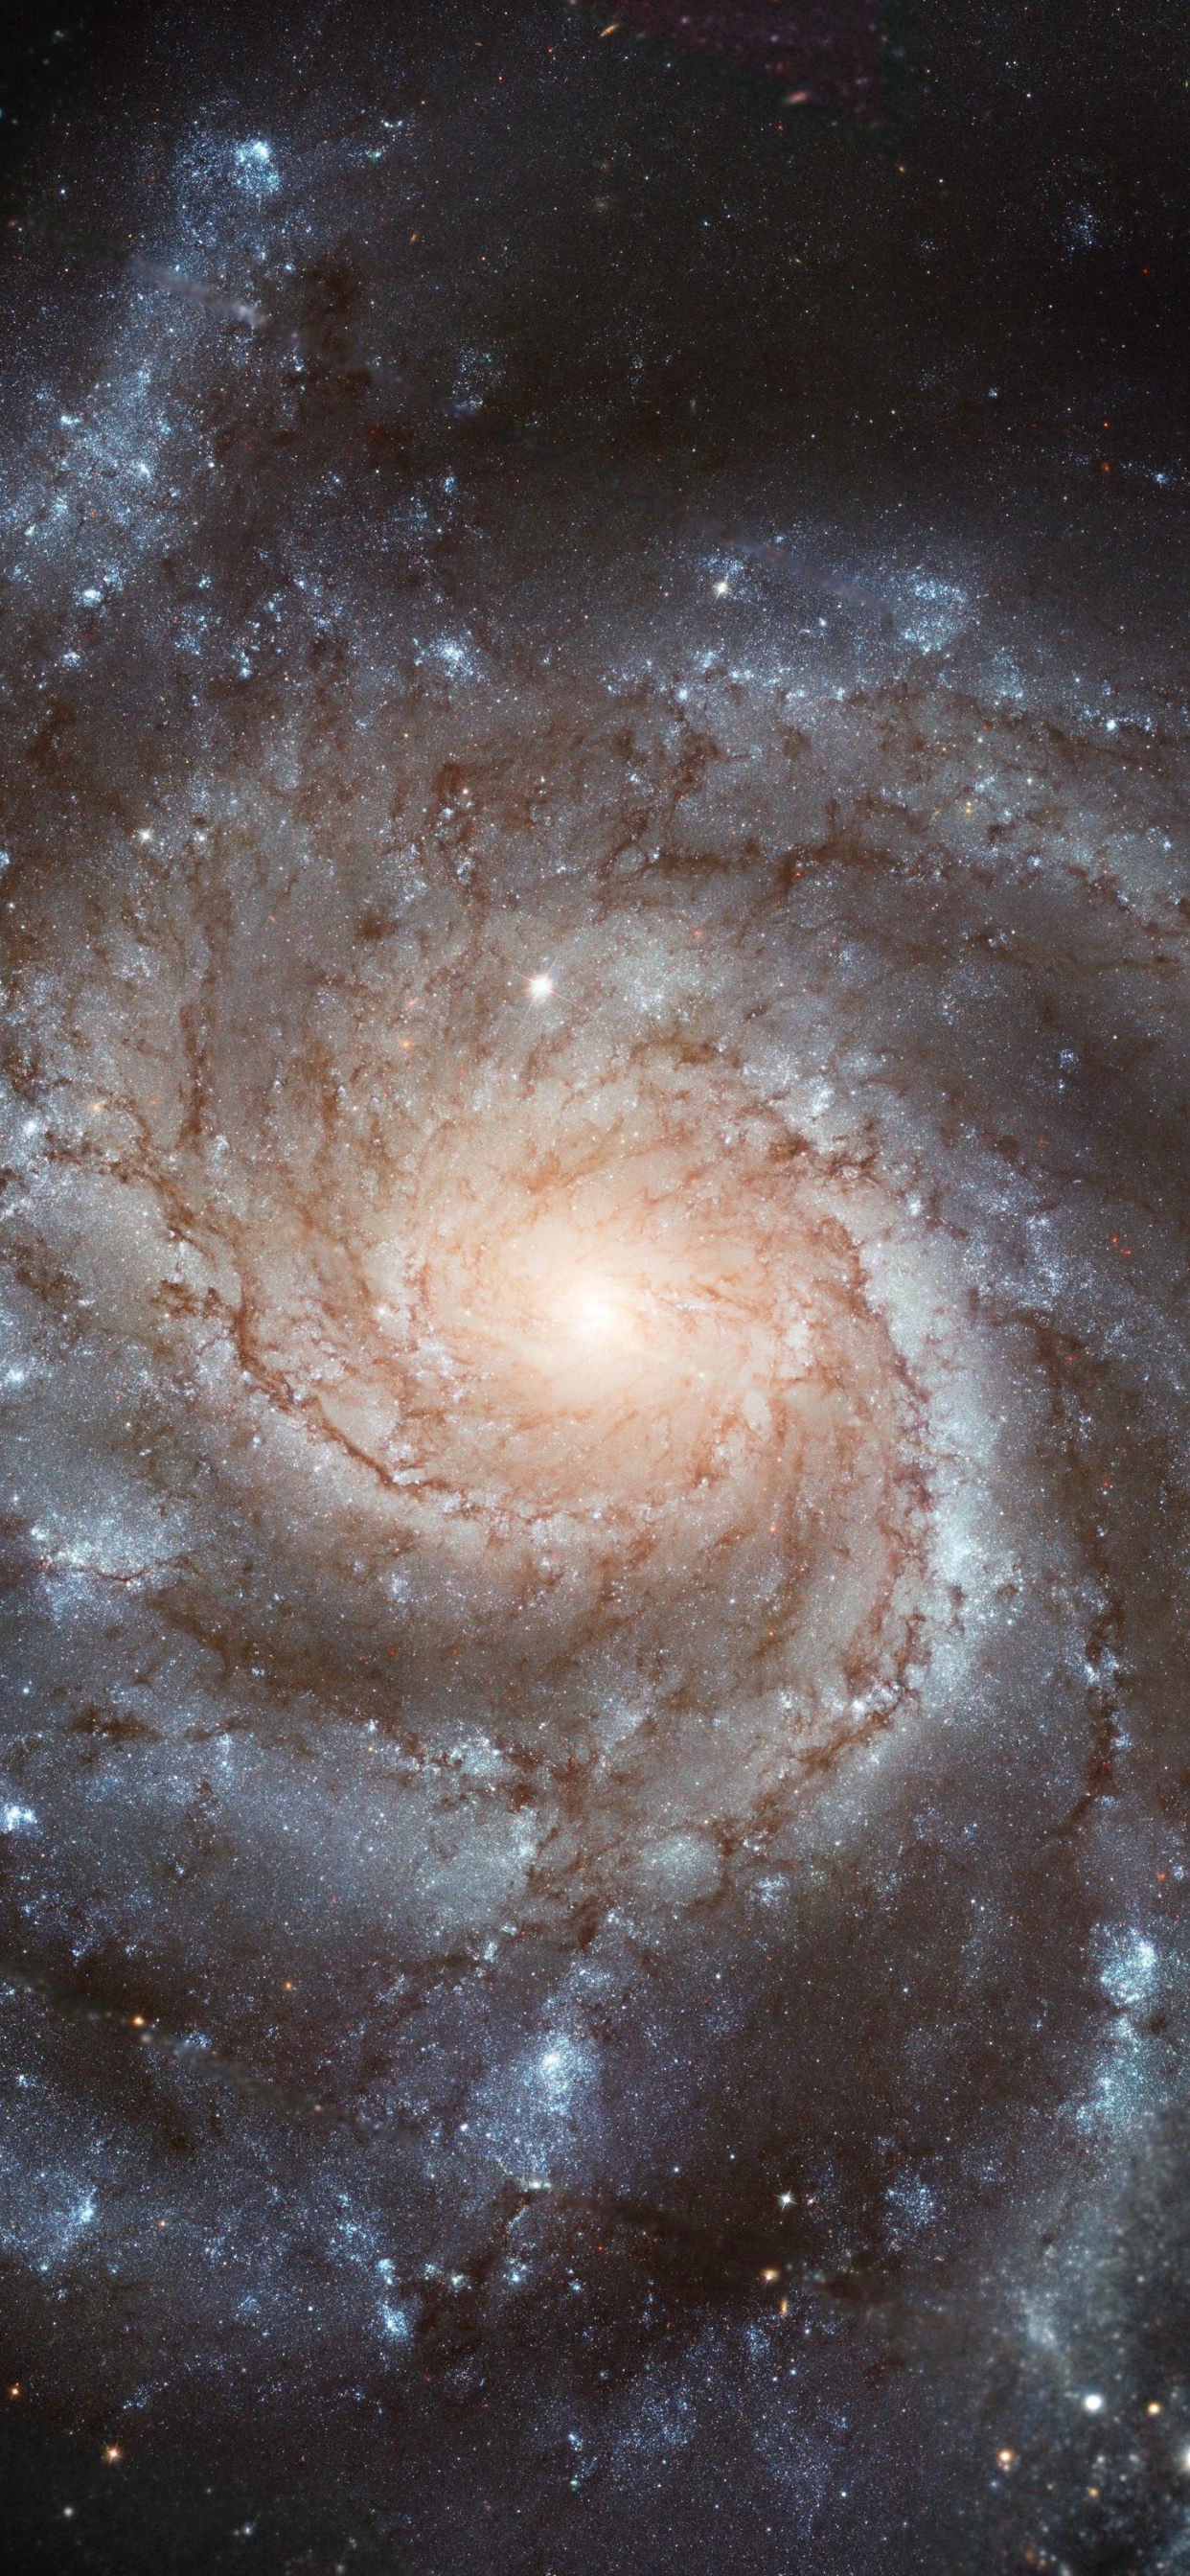 螺旋星系, 哈勃太空望远镜, 天文学, 天文学对象, 宇宙 壁纸 1242x2688 允许